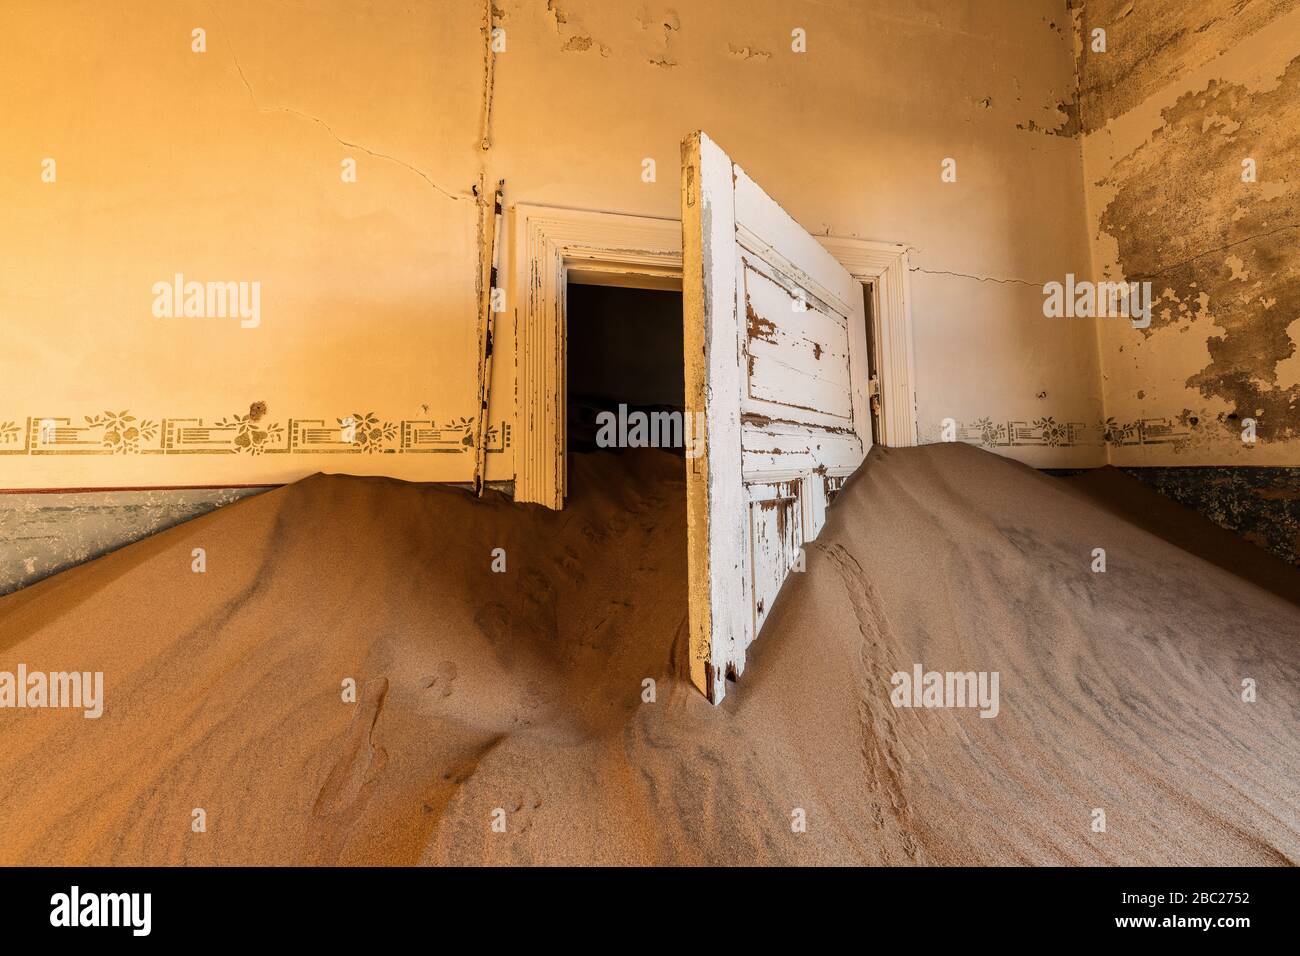 Una fotografía dentro de una casa abandonada con una puerta blanca abierta sumergida en la arena ondulada del desierto, tomada en la ciudad fantasma de Kolmanskop, Namibia. Foto de stock